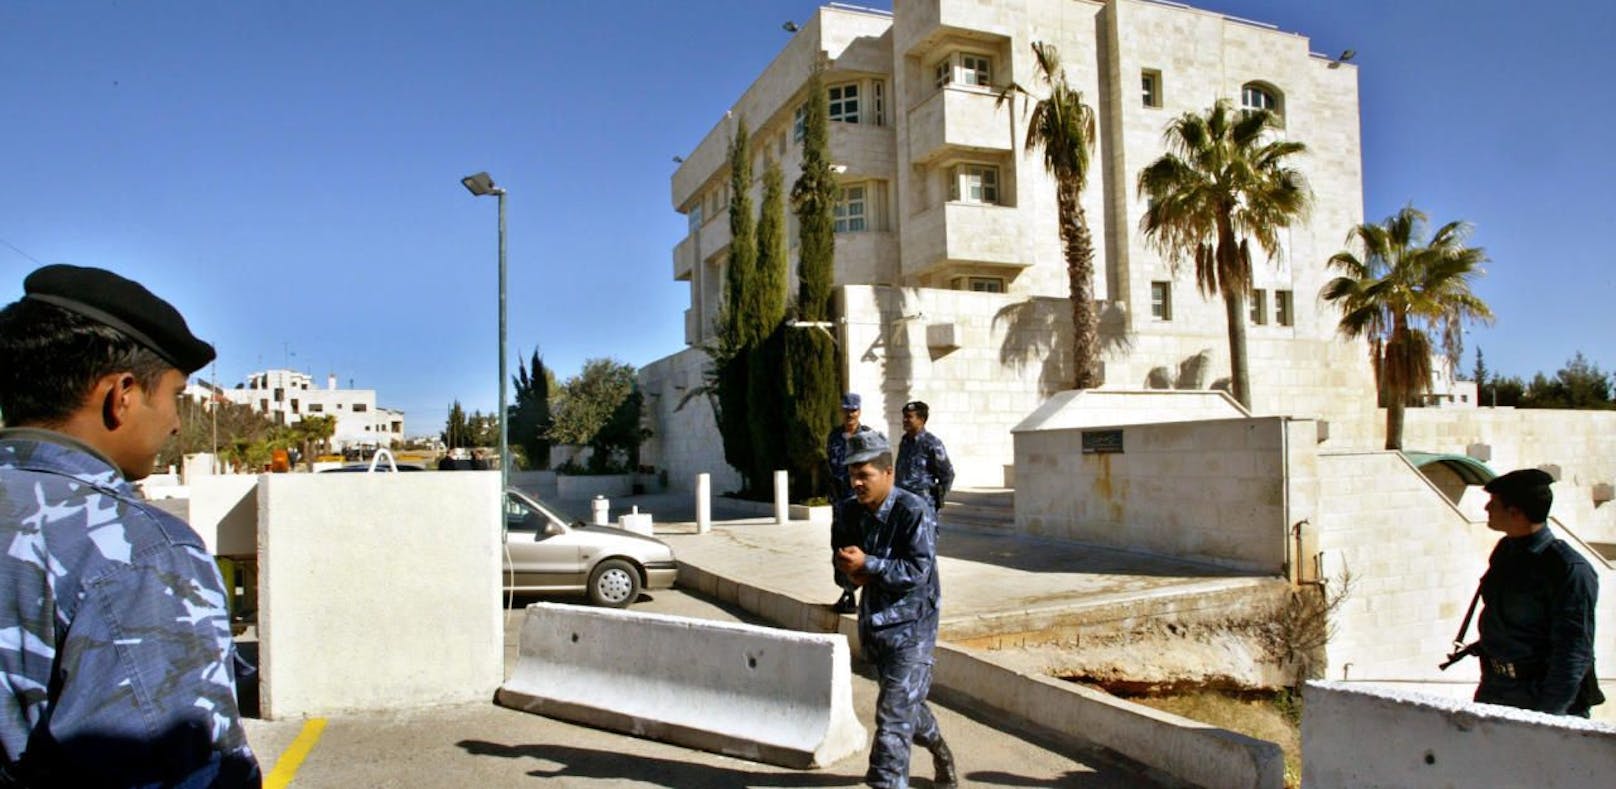 (Symbolbild) Die israelische Botschaft in der jordanischen Hauptstadt Amman ist immer wieder Ziel von Anschlägen.